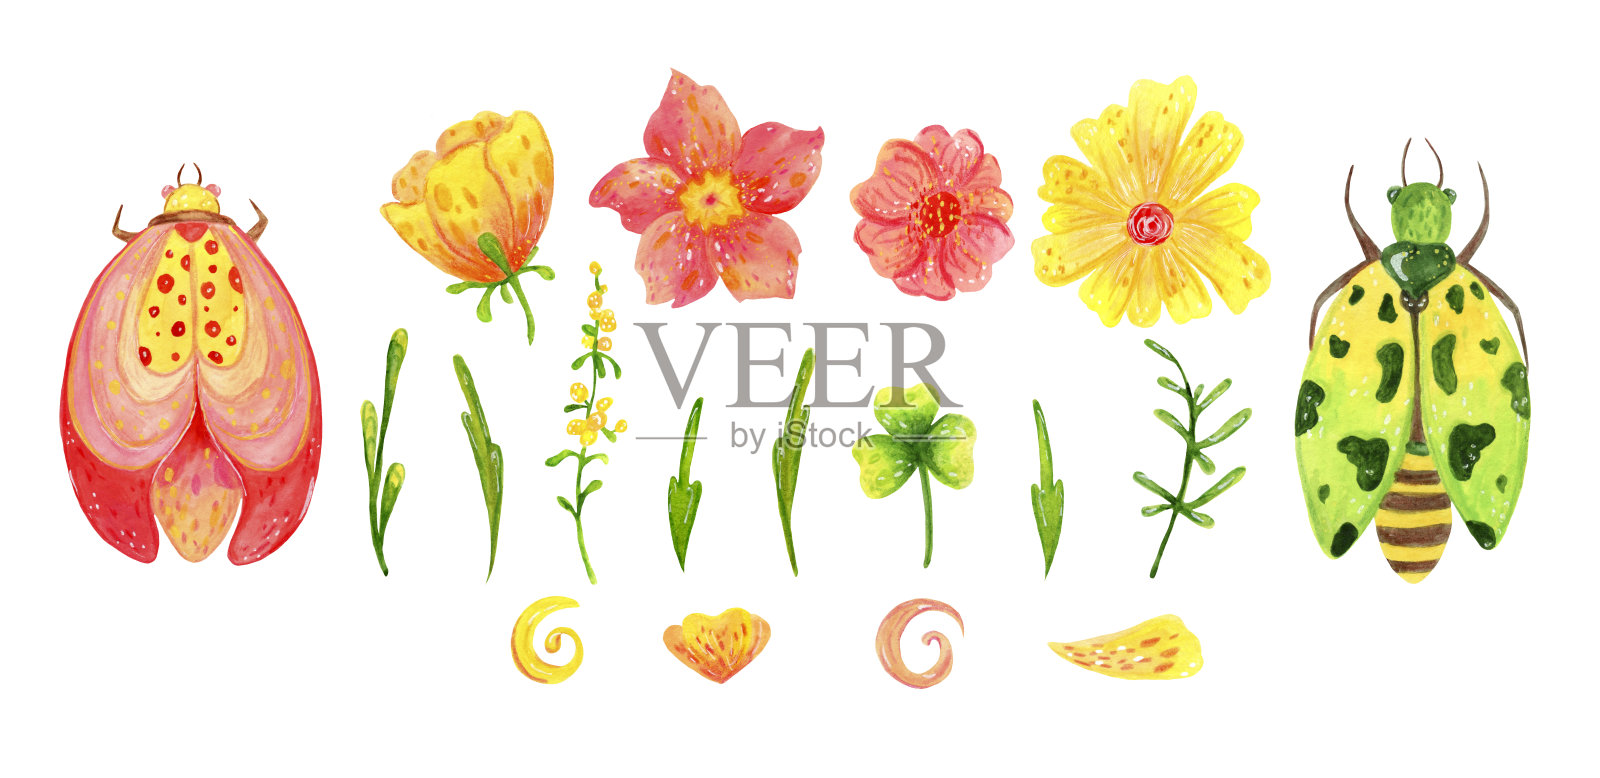 一套抽象的春天花的叶子和甲虫为节日装饰和设计。插画图片素材